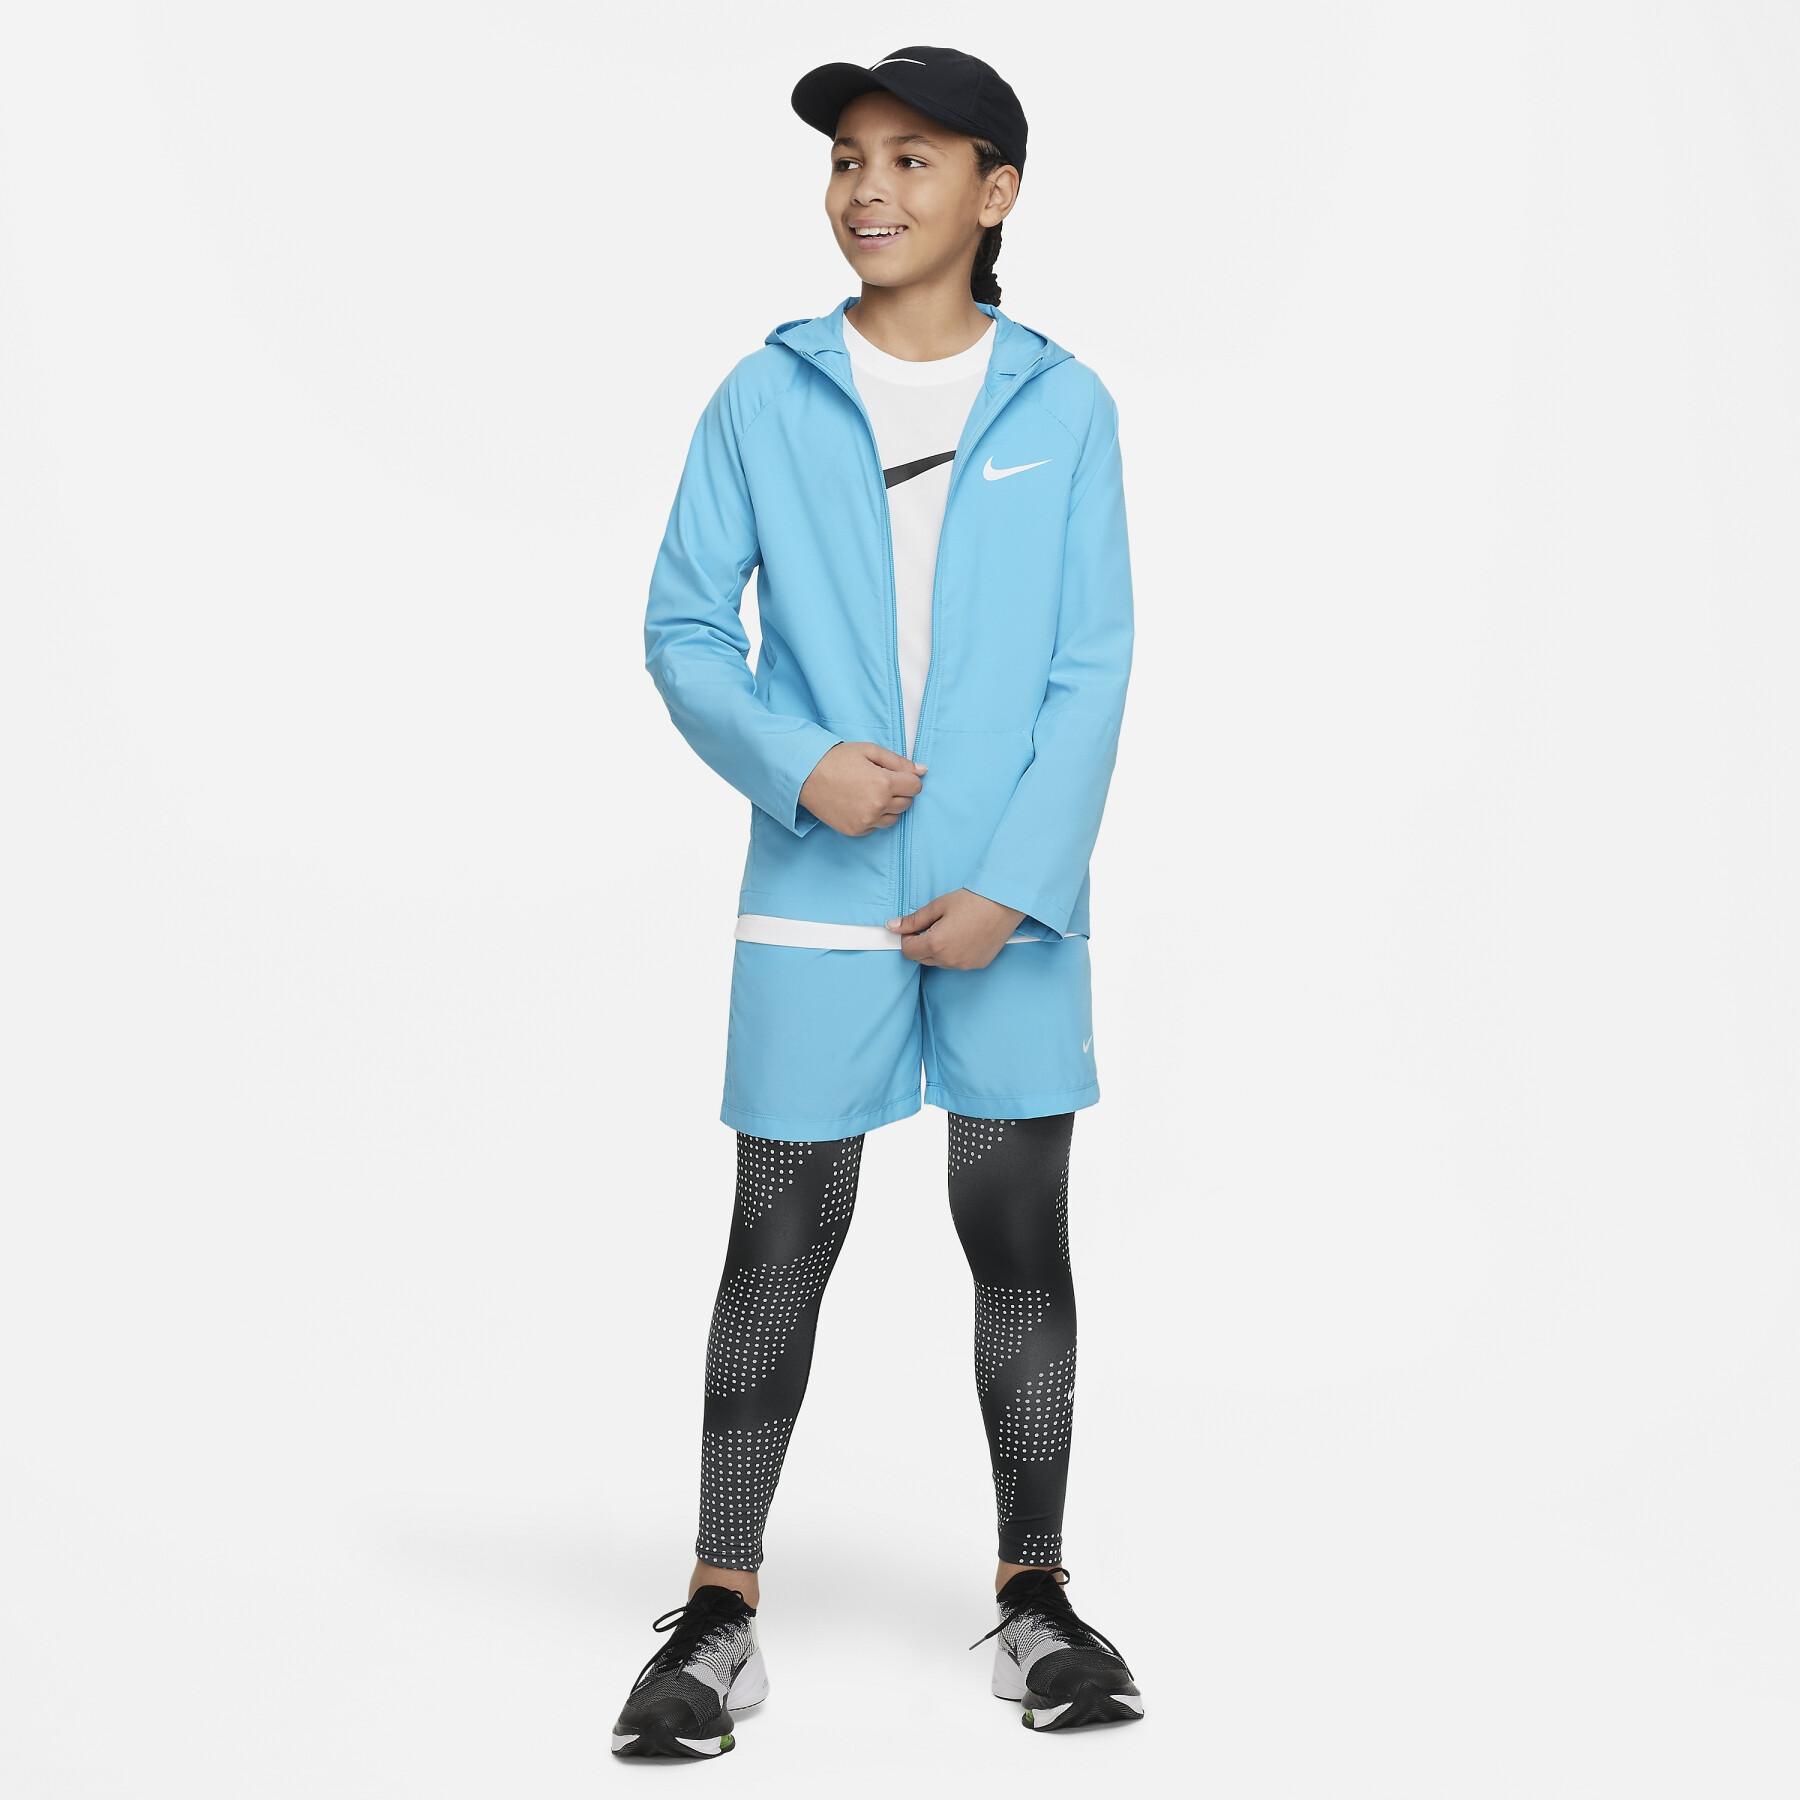 Maillot enfant Nike Dri-FIT